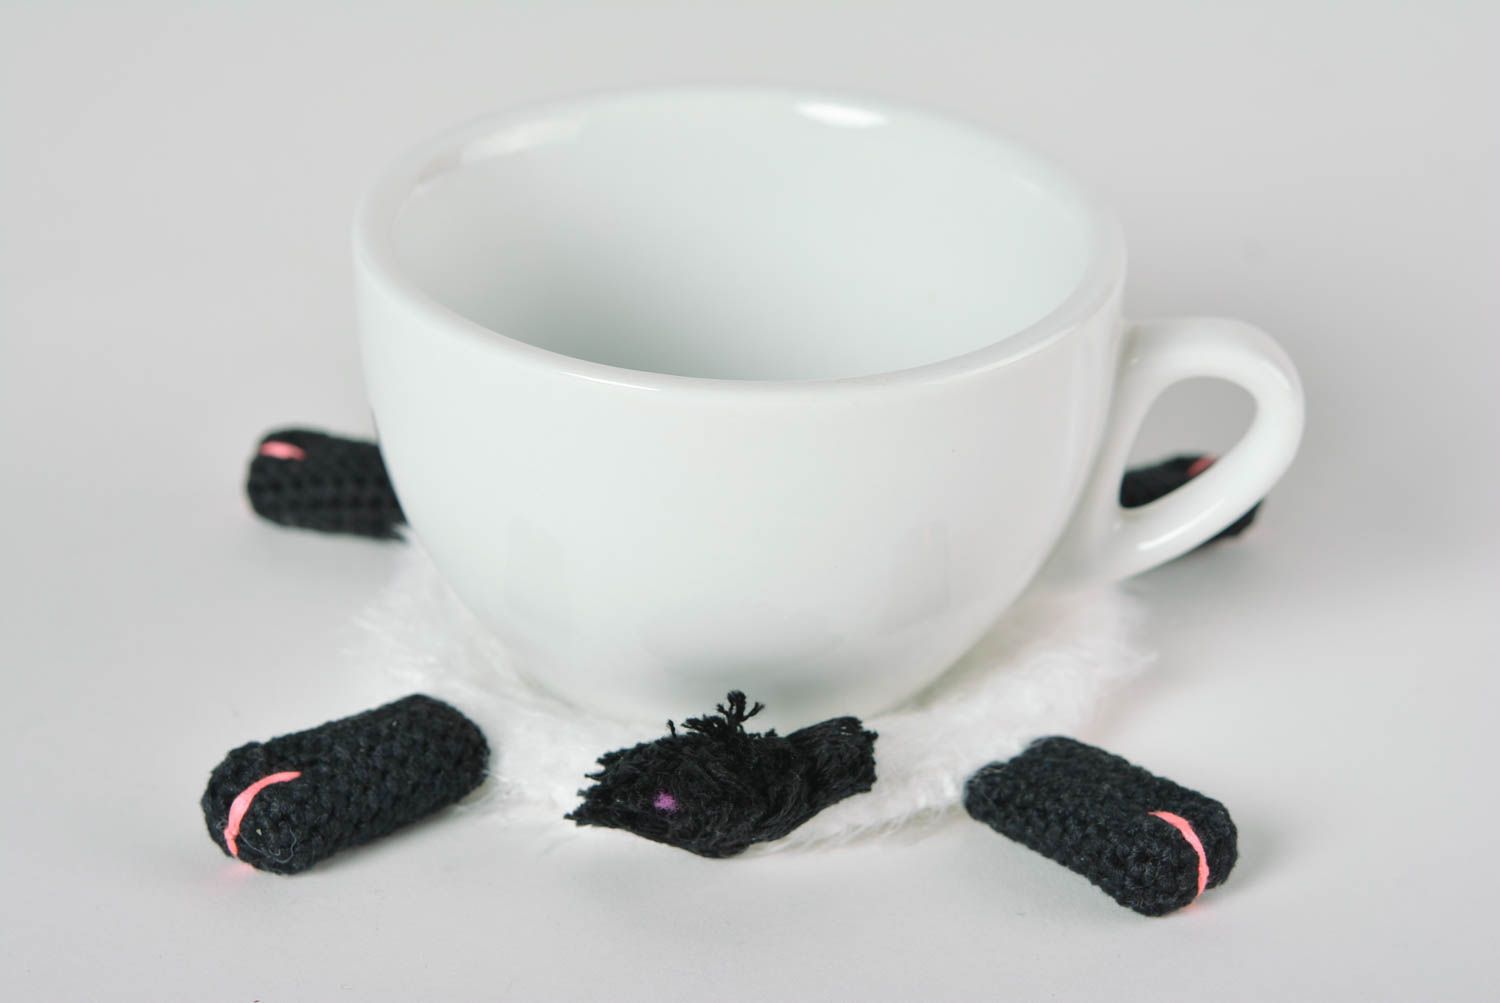 Dessous-de-verre design fait main Déco cuisine brebis blanche tricot au crochet photo 2